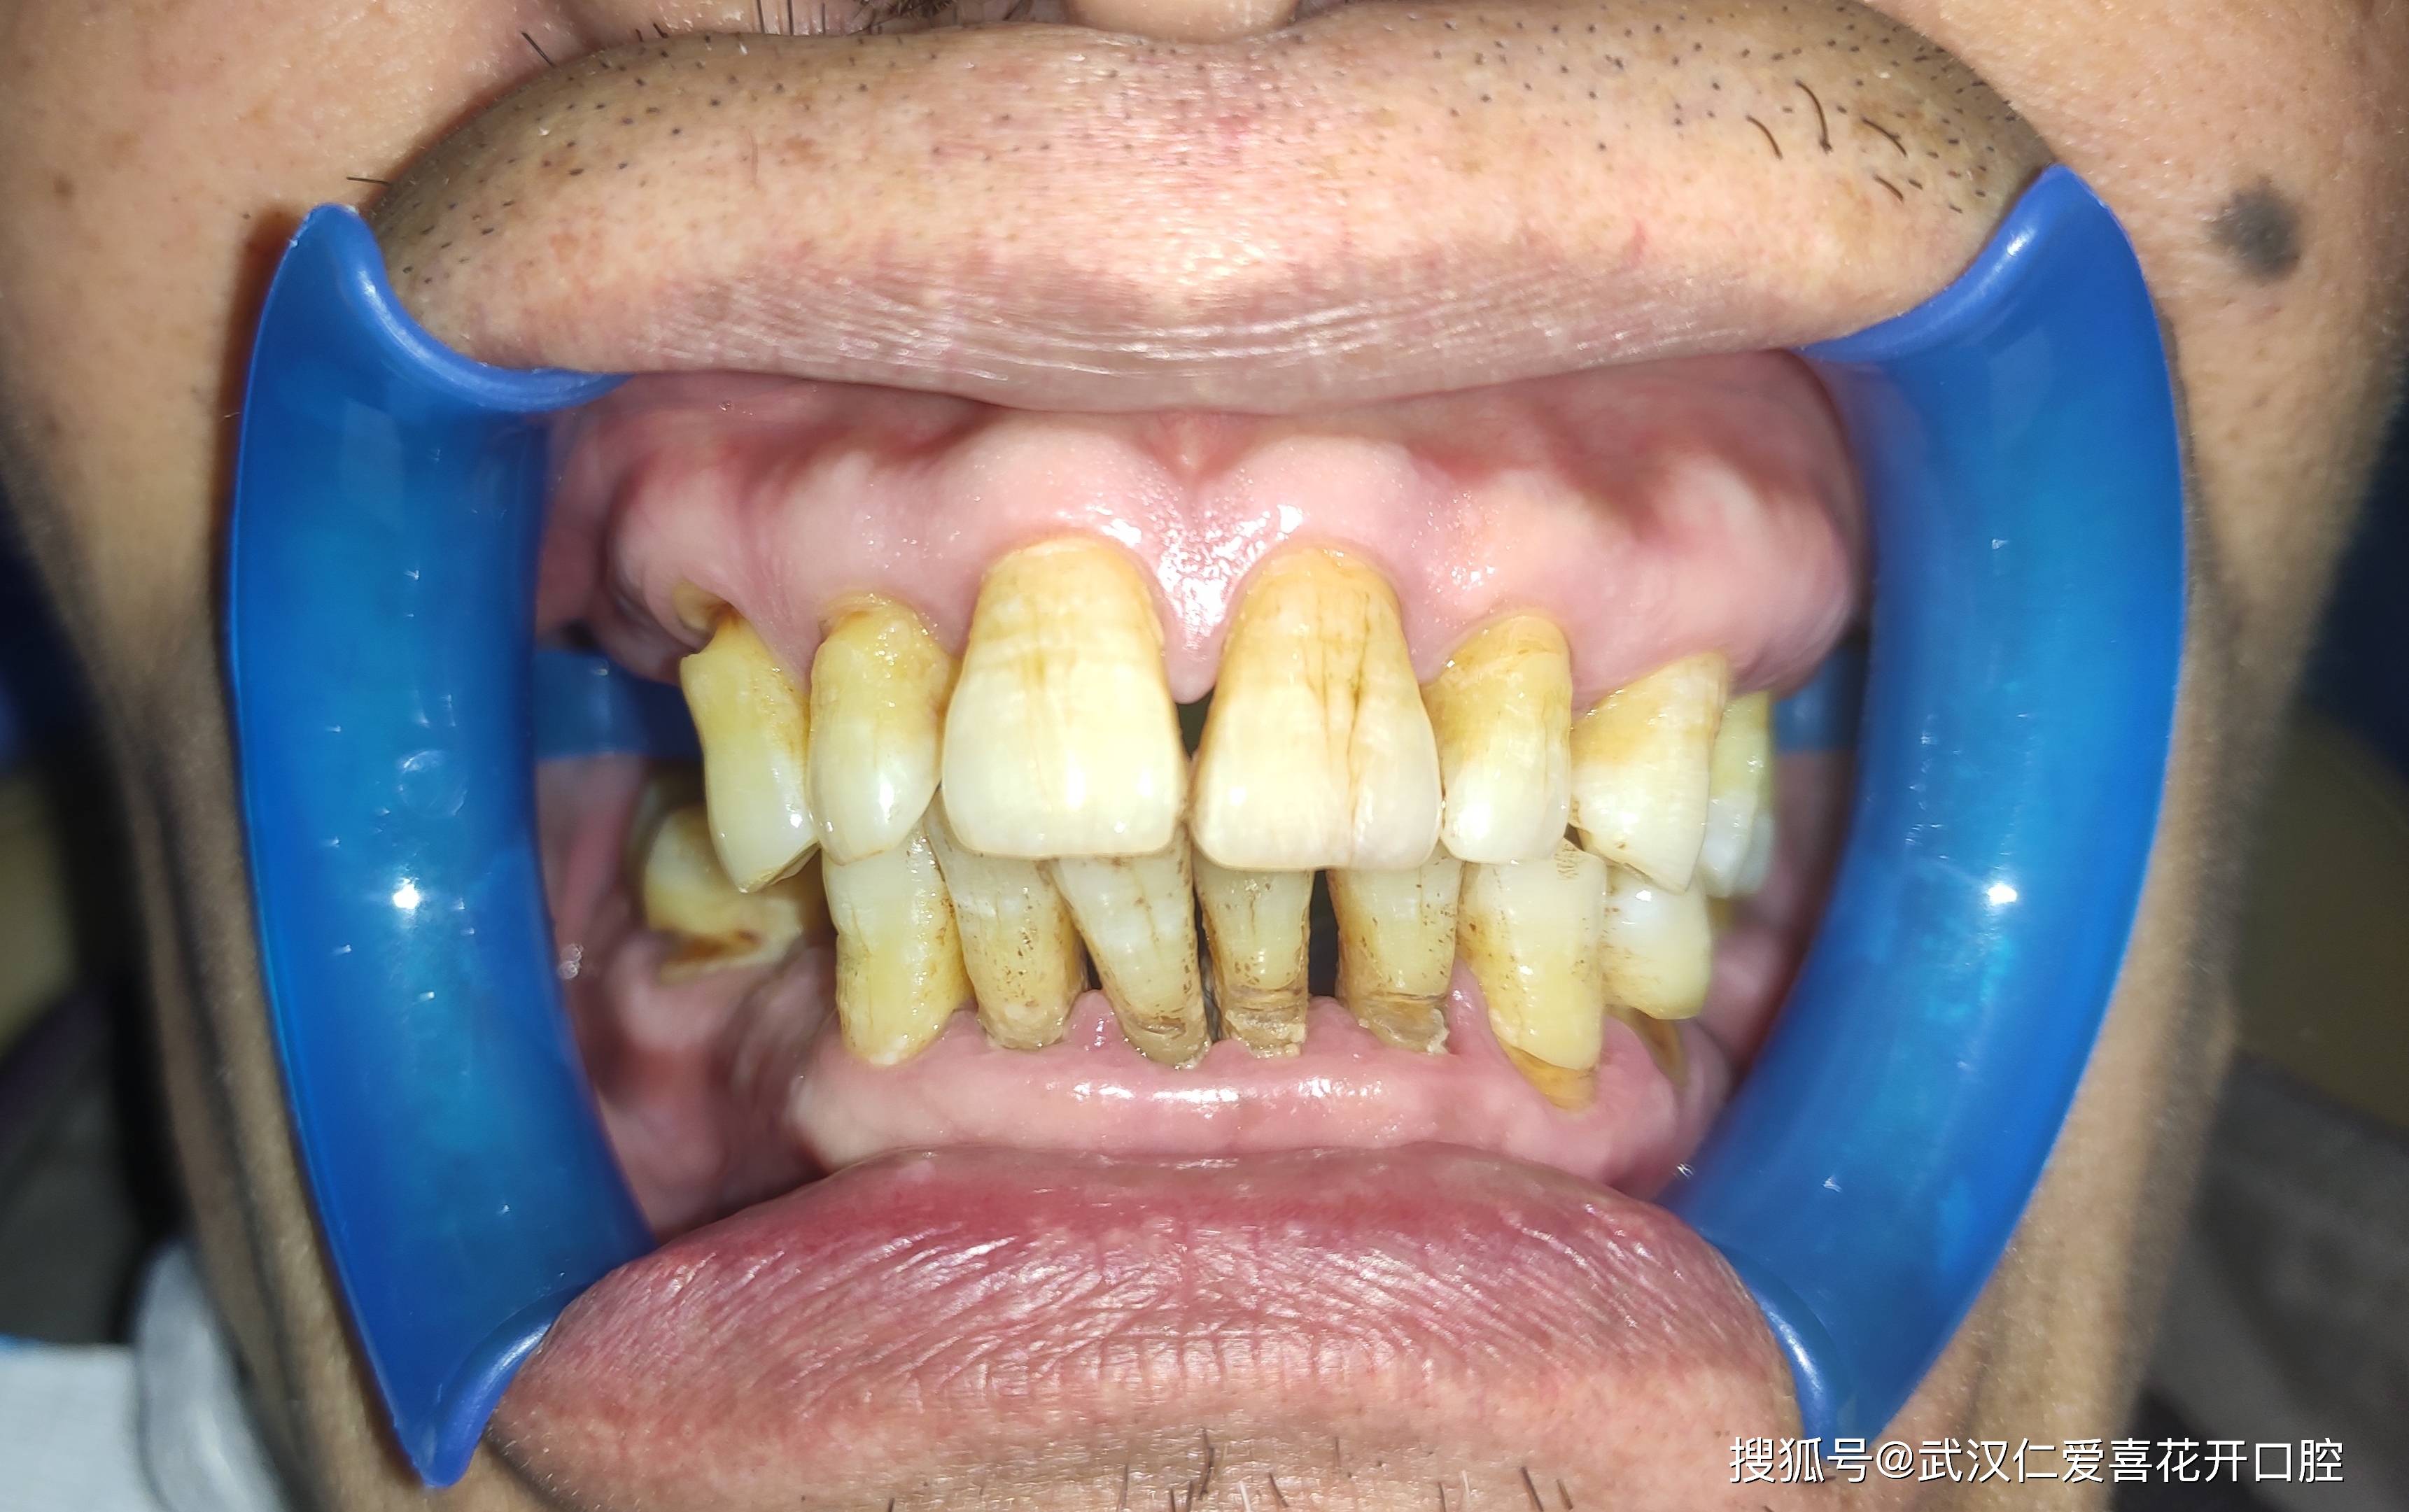 早期牙周炎:在牙龈炎的表现之外,还会有牙周袋形成,牙槽骨会有轻度